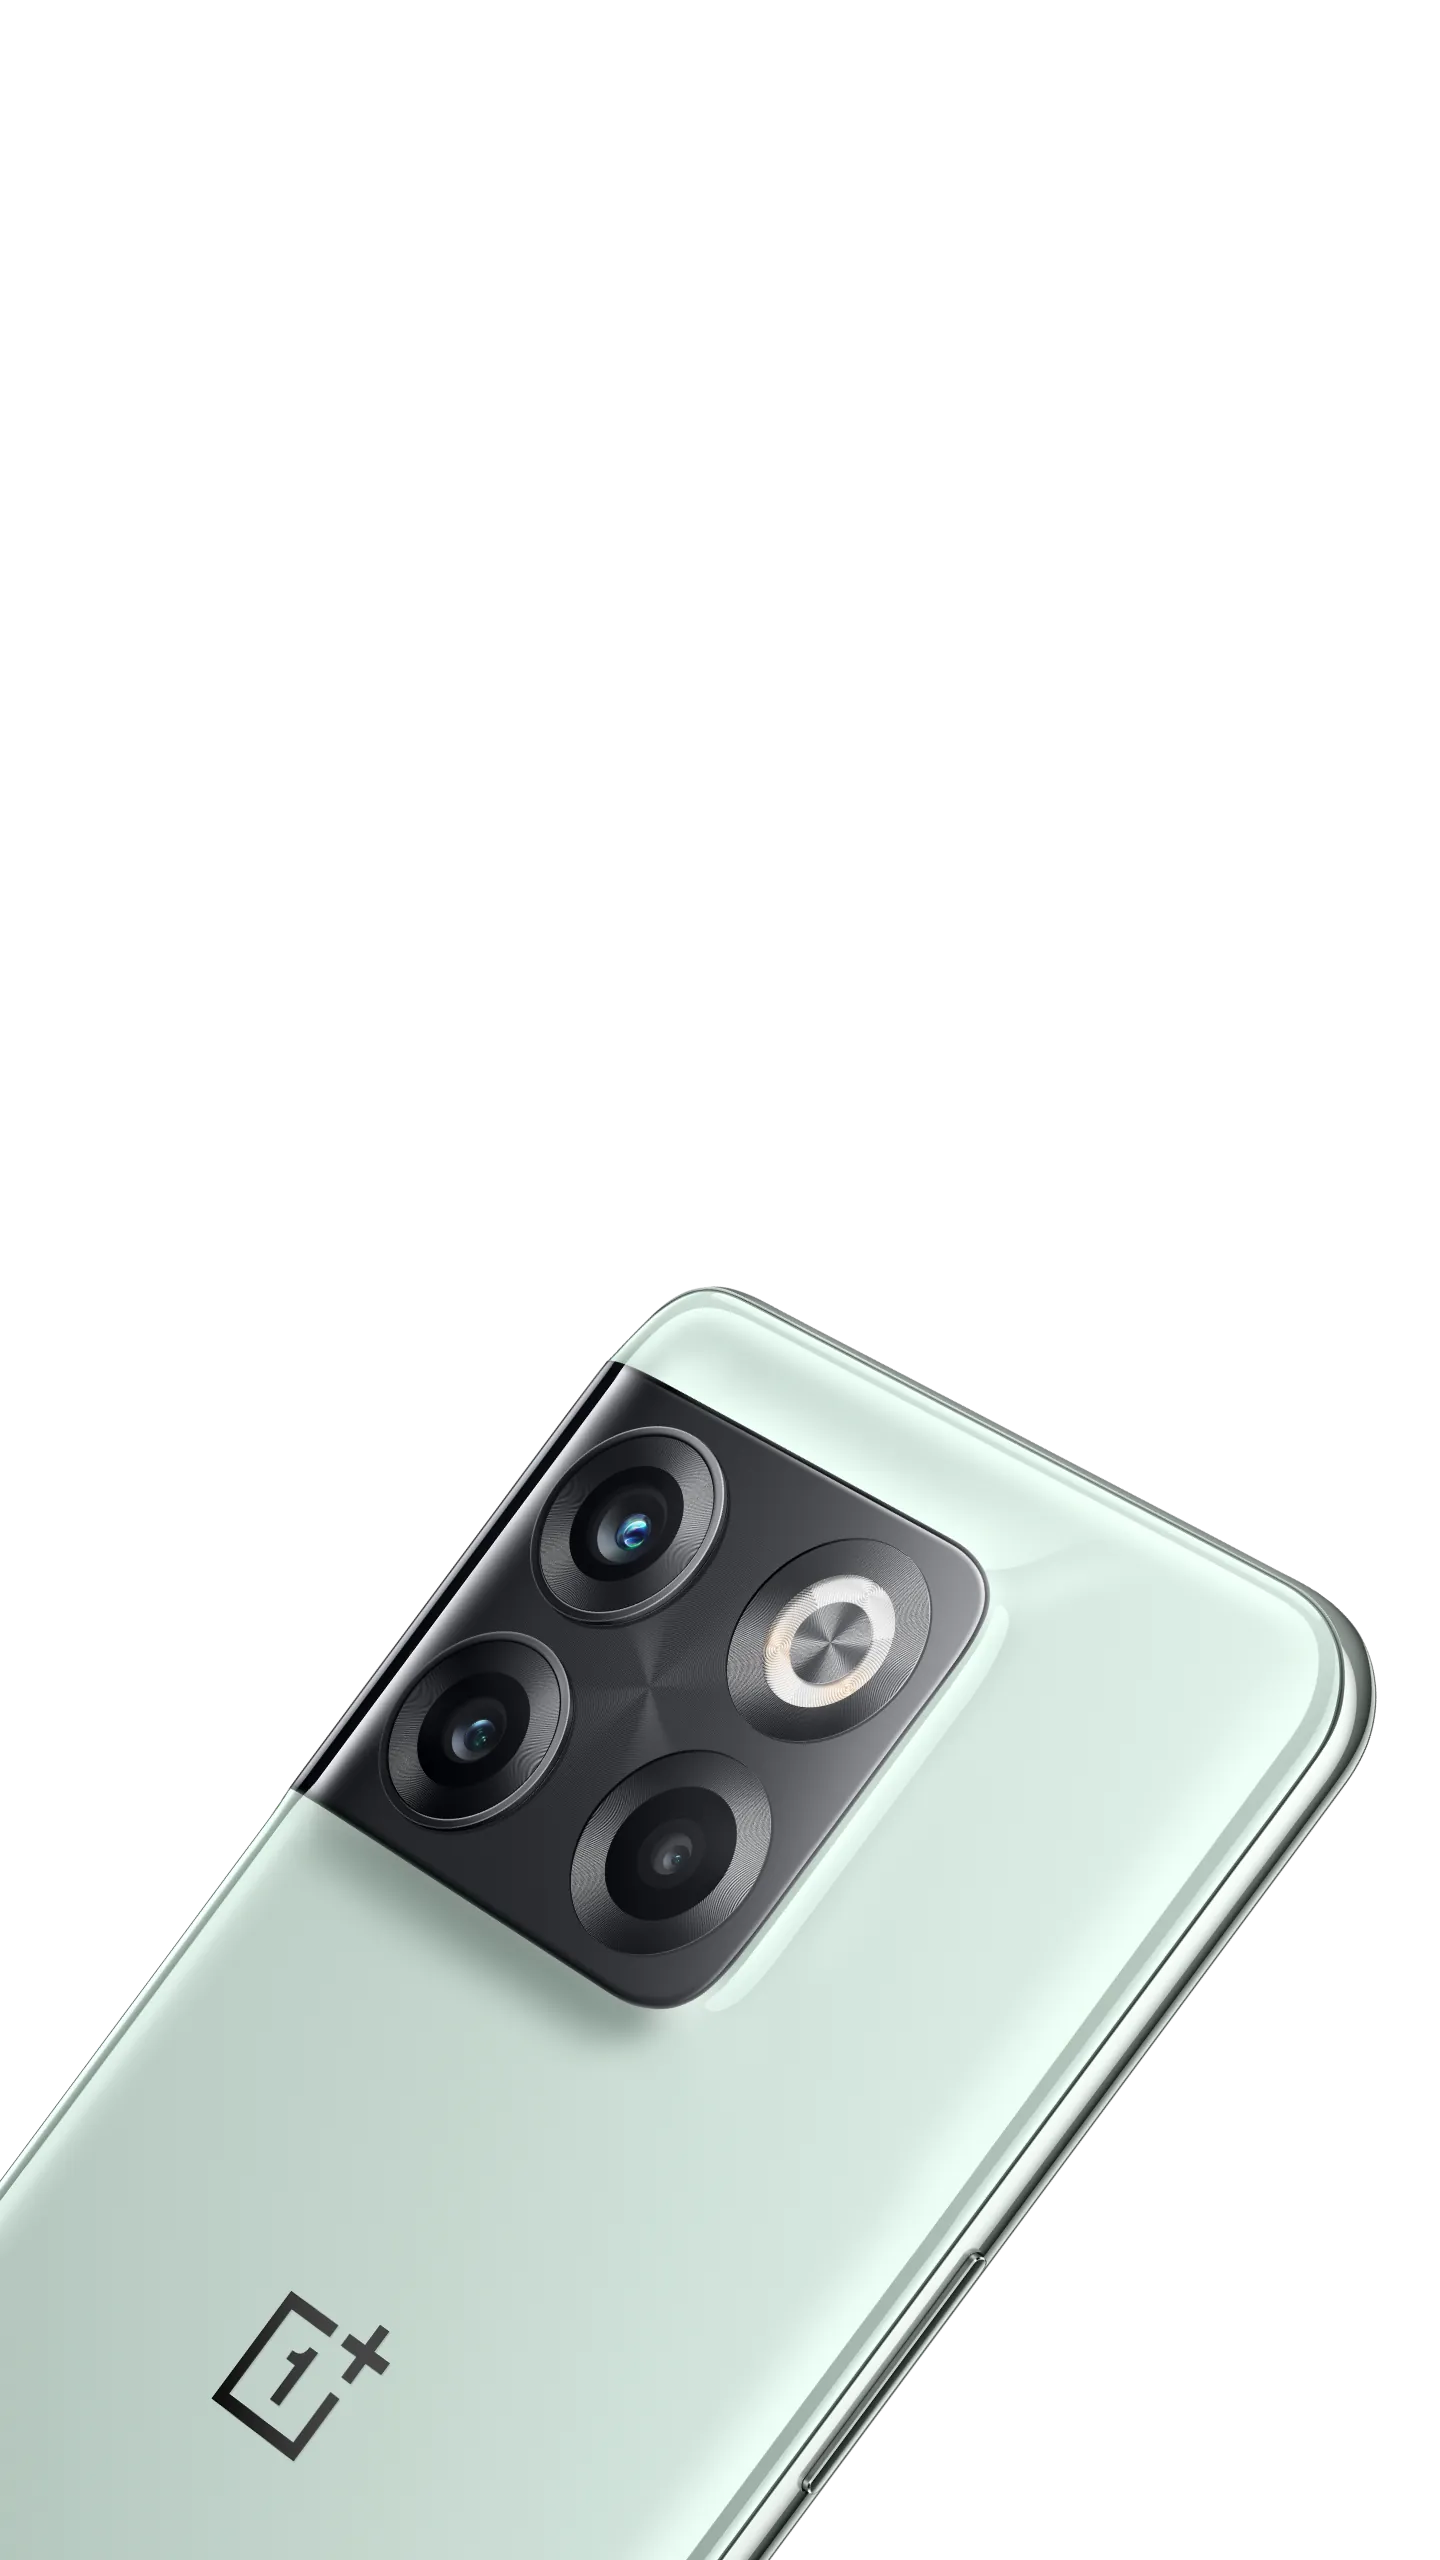 OnePlus 10T (5G) - Clove Technology